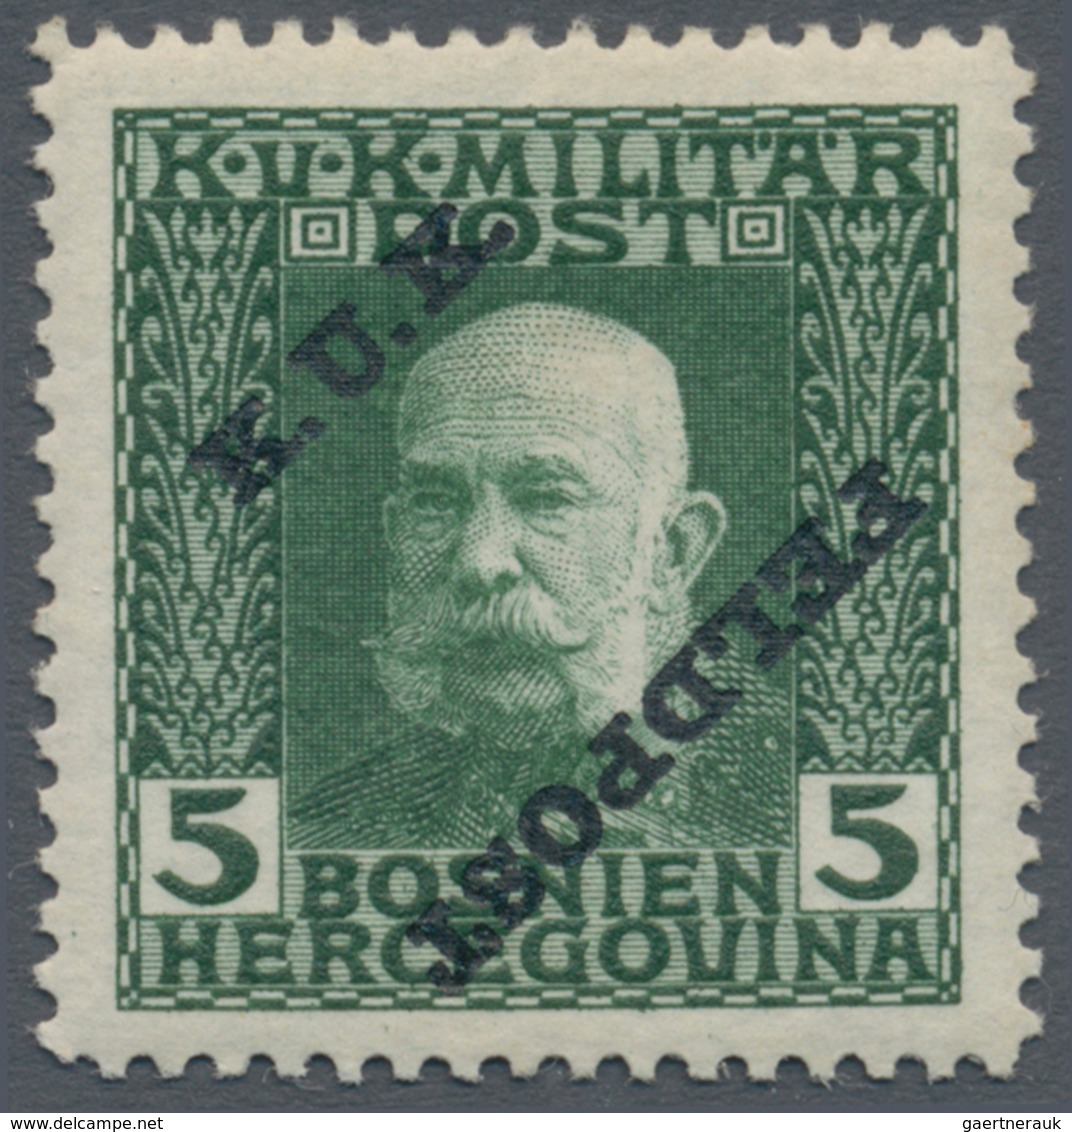 Österreichisch-Ungarische Feldpost - Allgemeine Ausgabe: 1915, 1 H - 10 K Franz Joseph gezähnt mit s